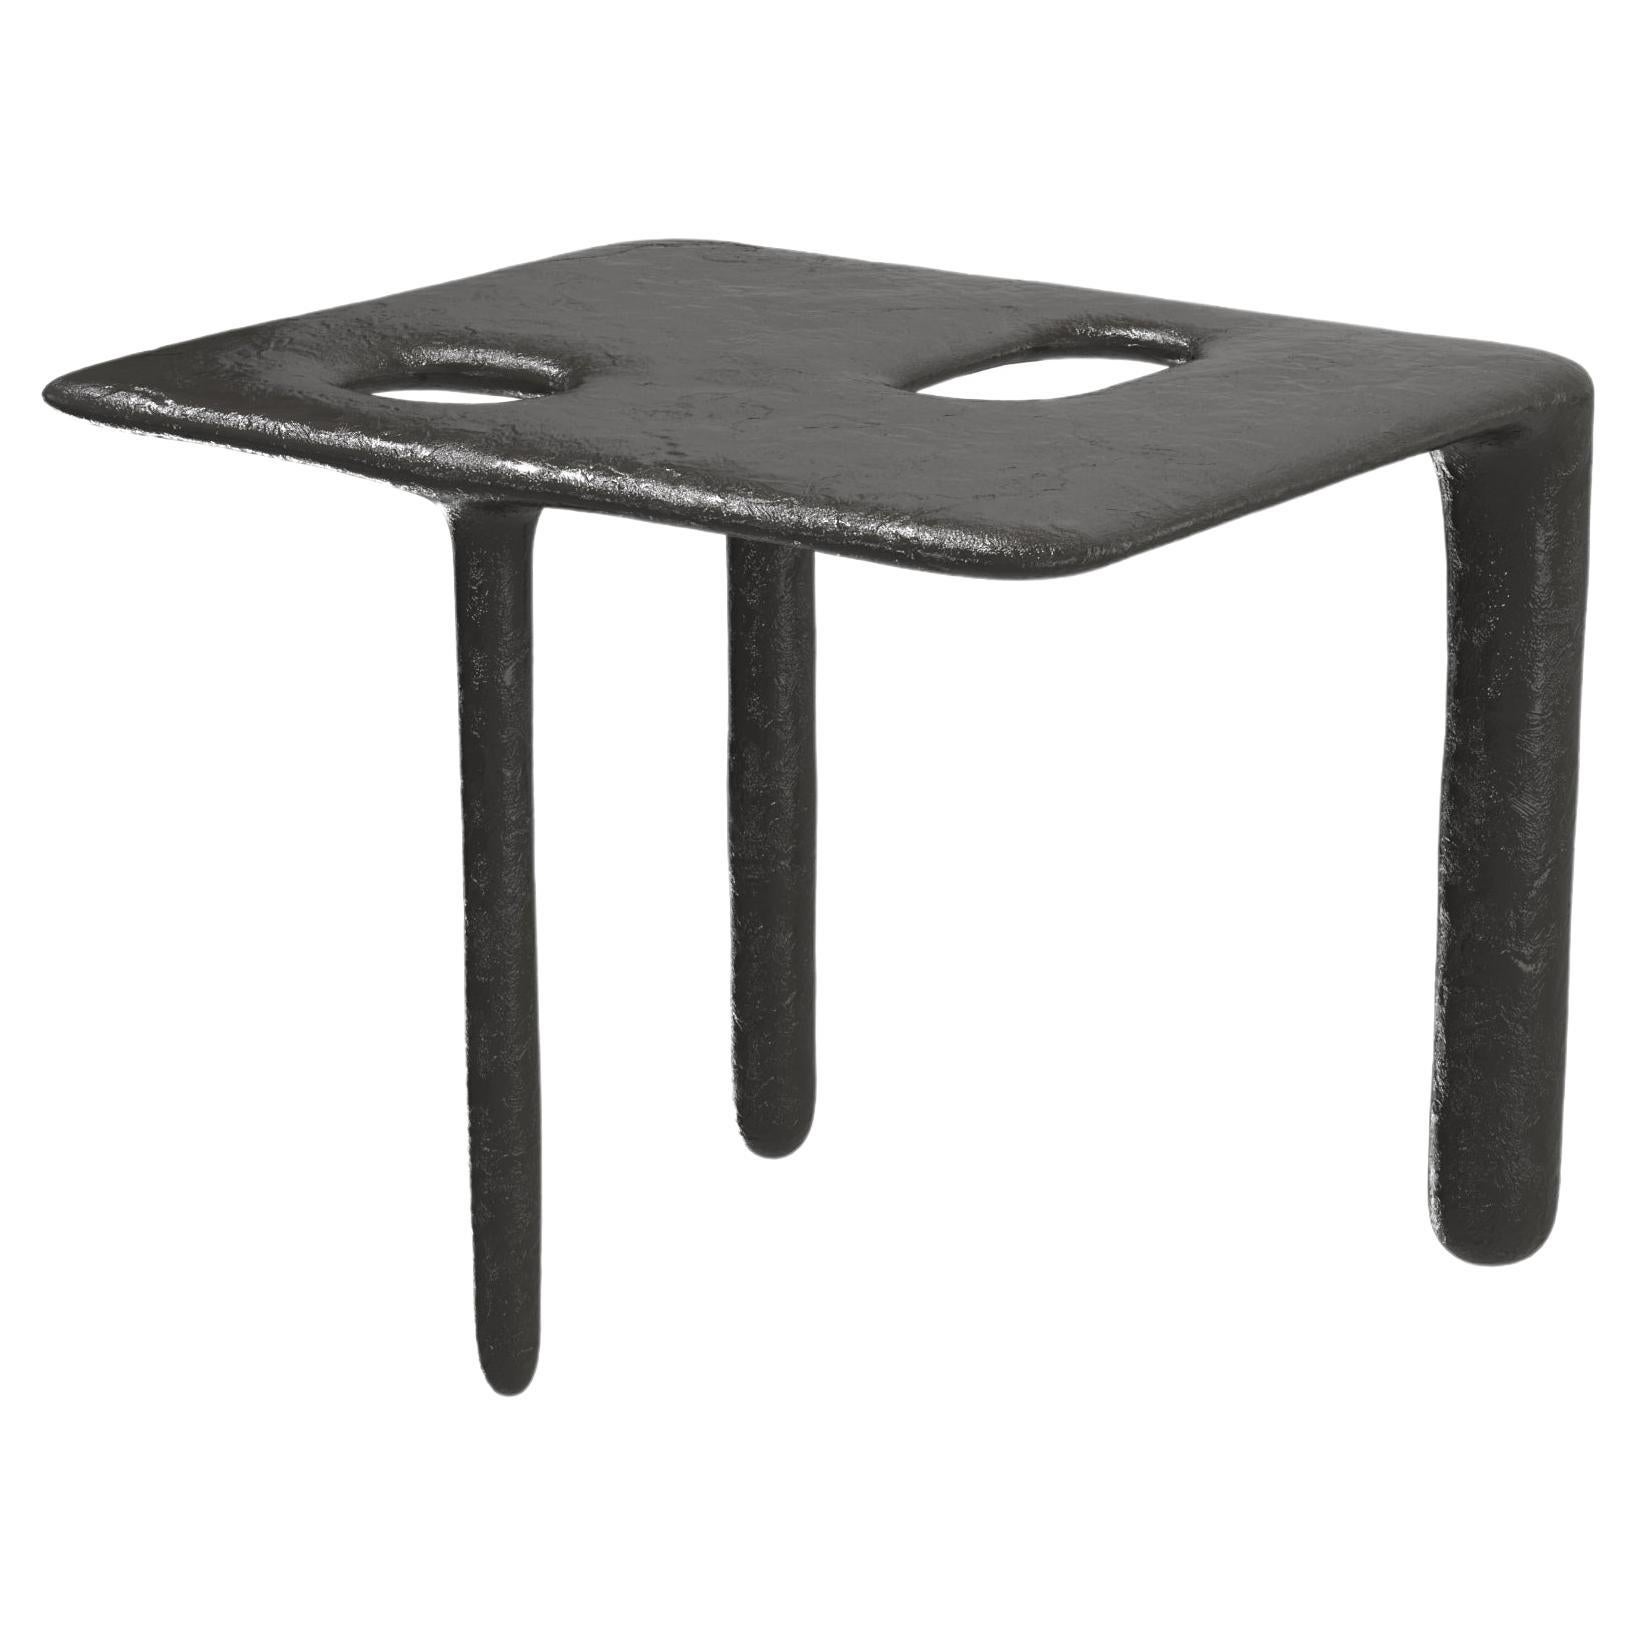 Limited Edition Bronze Table, Oasi V1 by Edizione Limitata